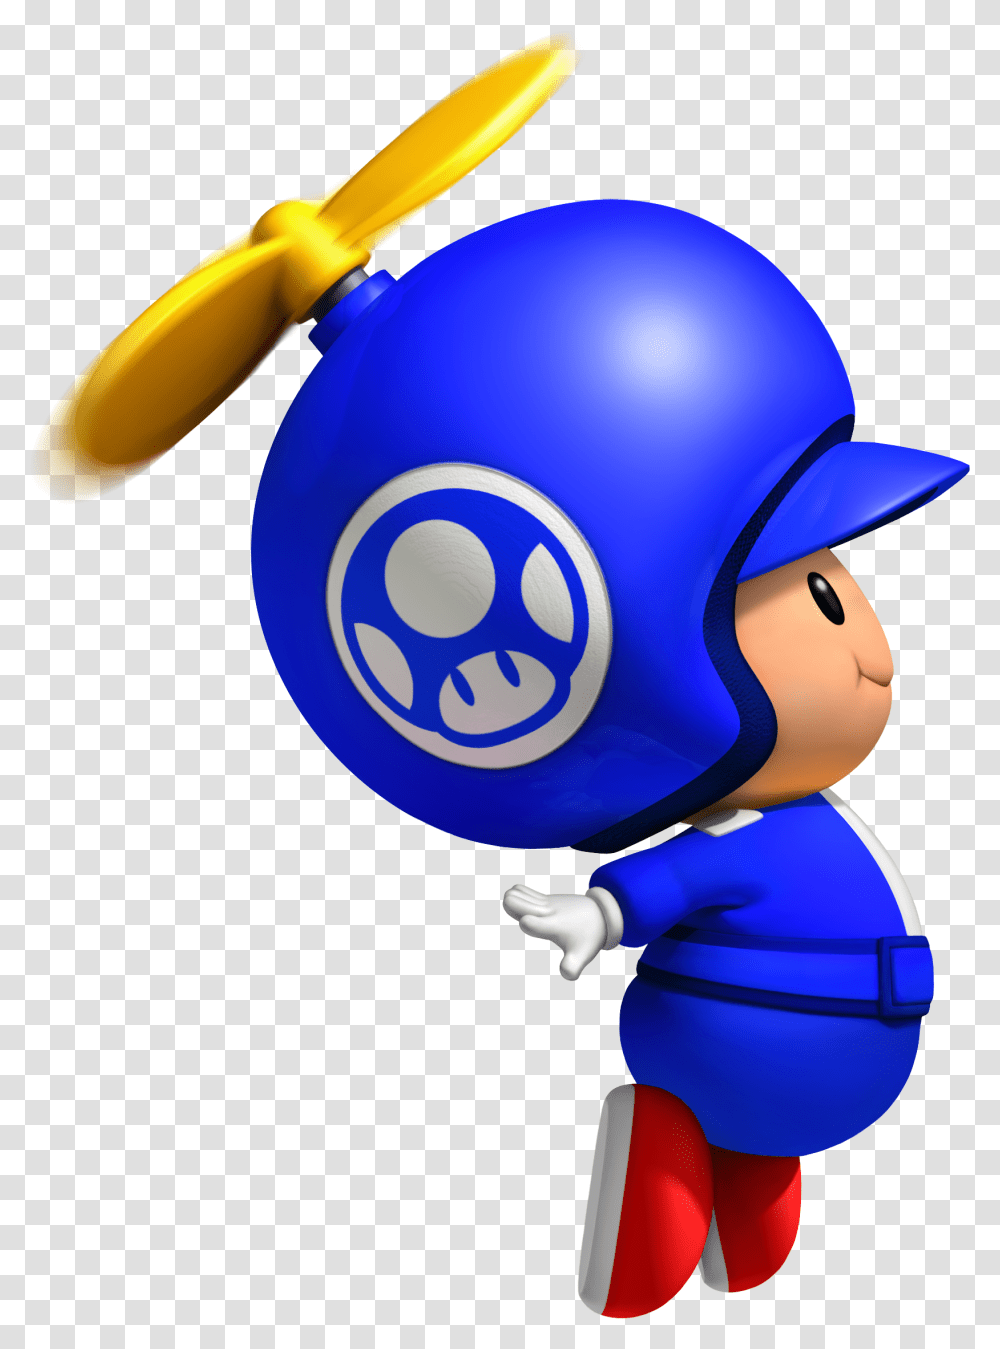 New Super Mario Bros Wii Blue Toad, Apparel, Helmet, Crash Helmet Transparent Png